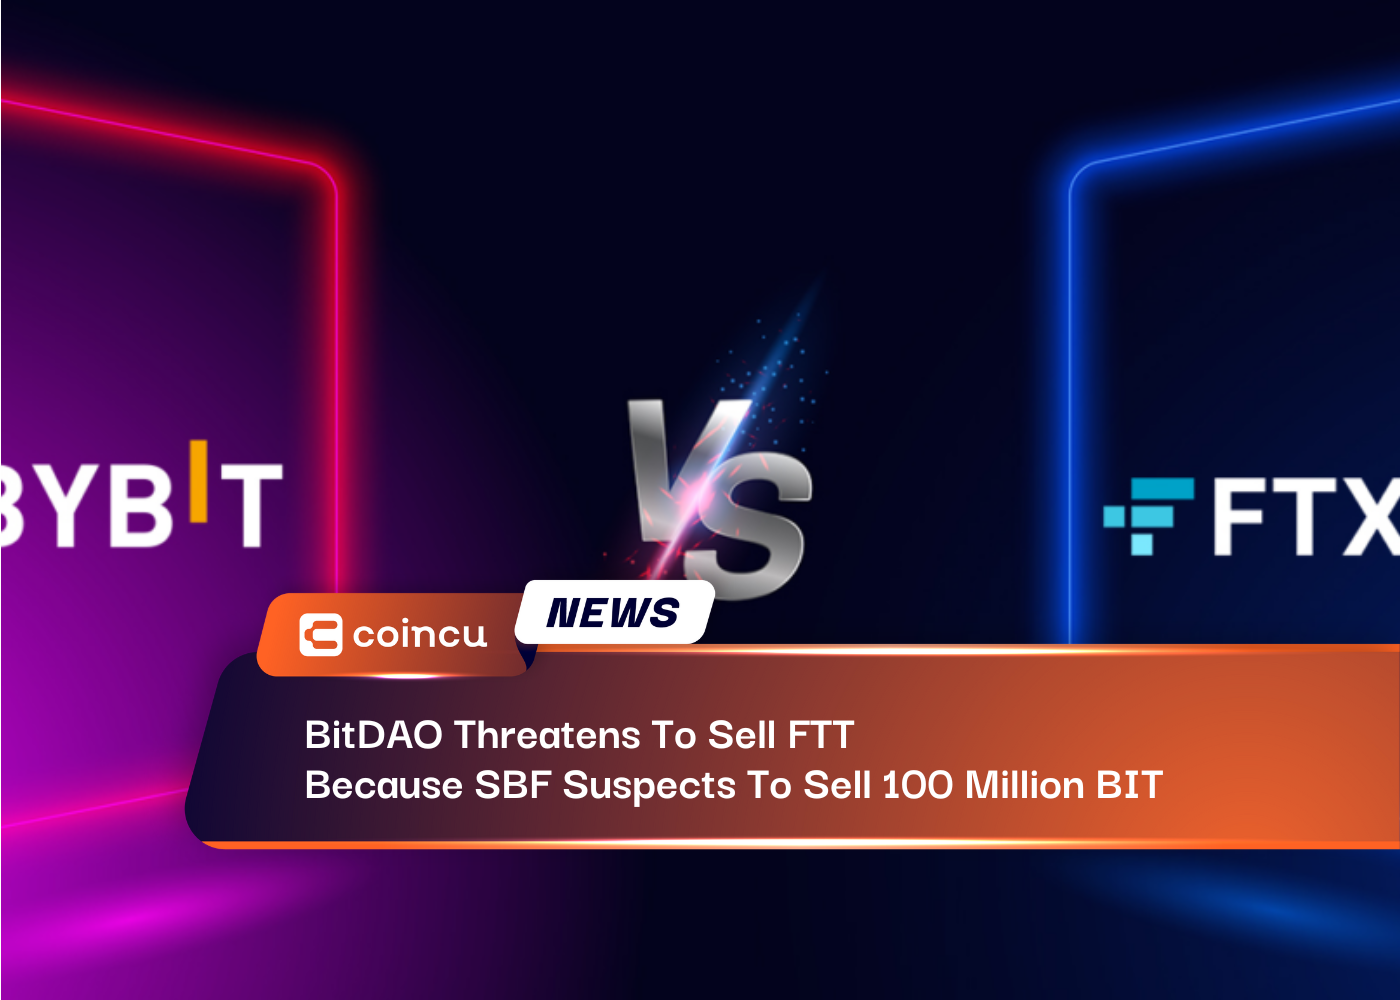 BitDAO amenaza con vender FTT porque SBF sospecha vender 100 millones de BIT